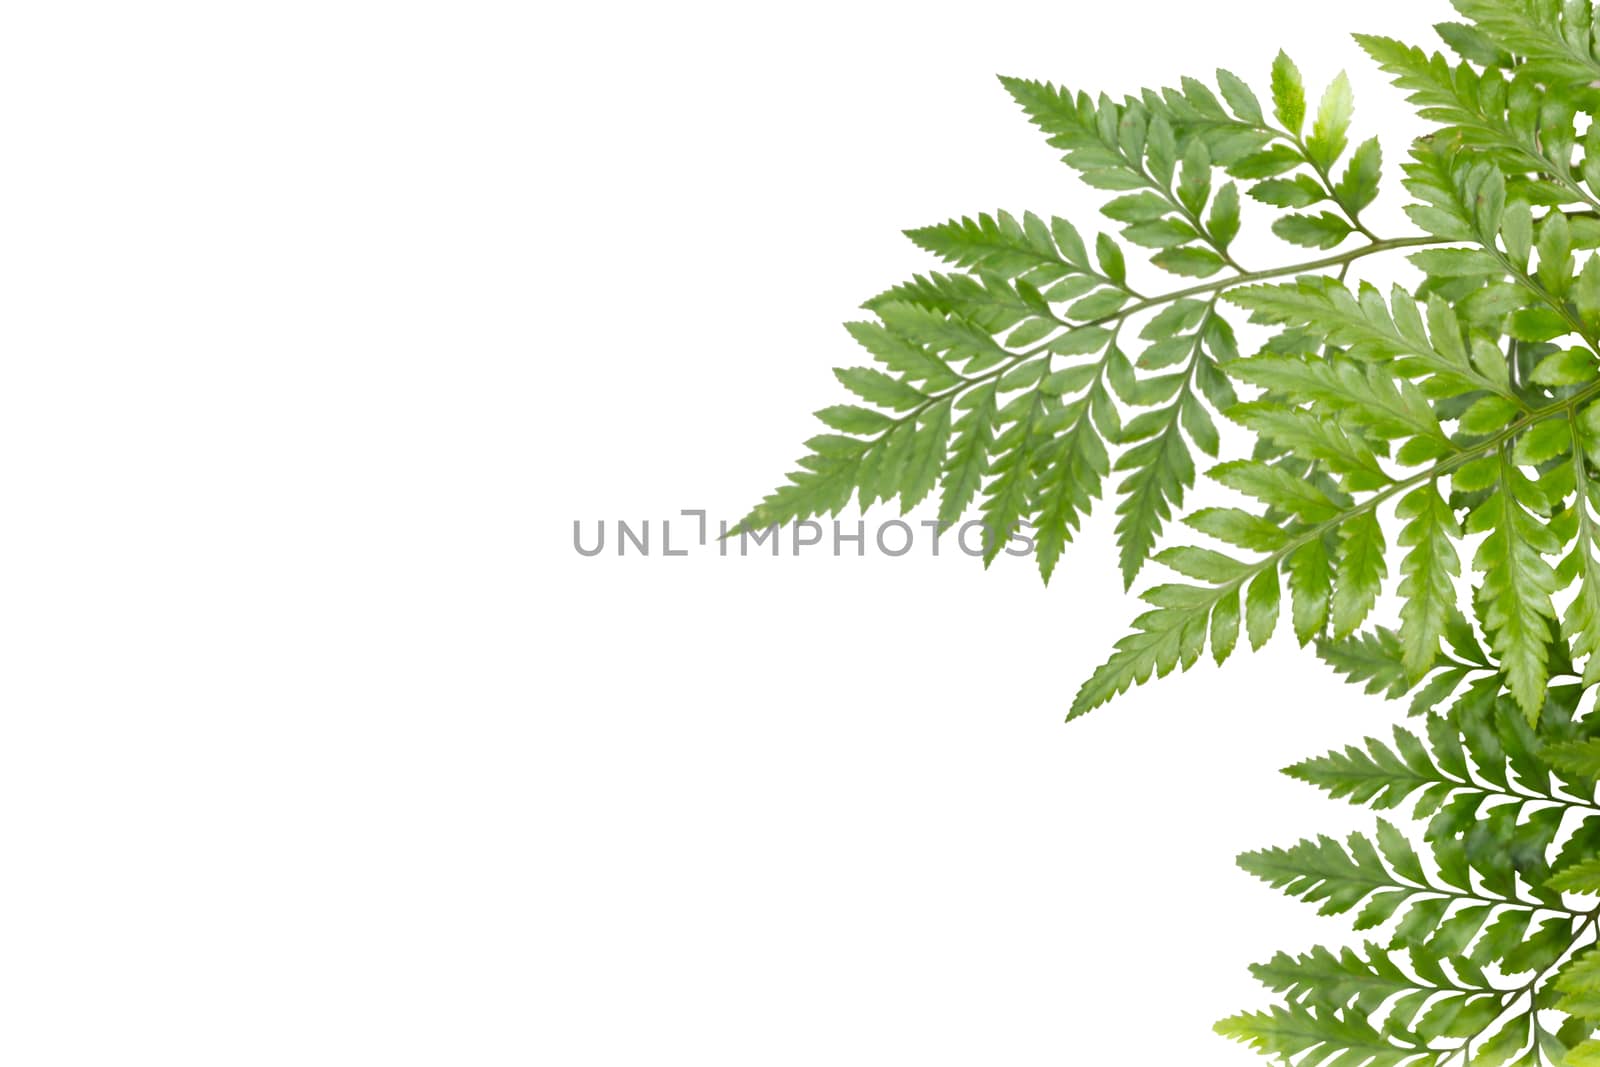 green leaves for frame on white background, nature border